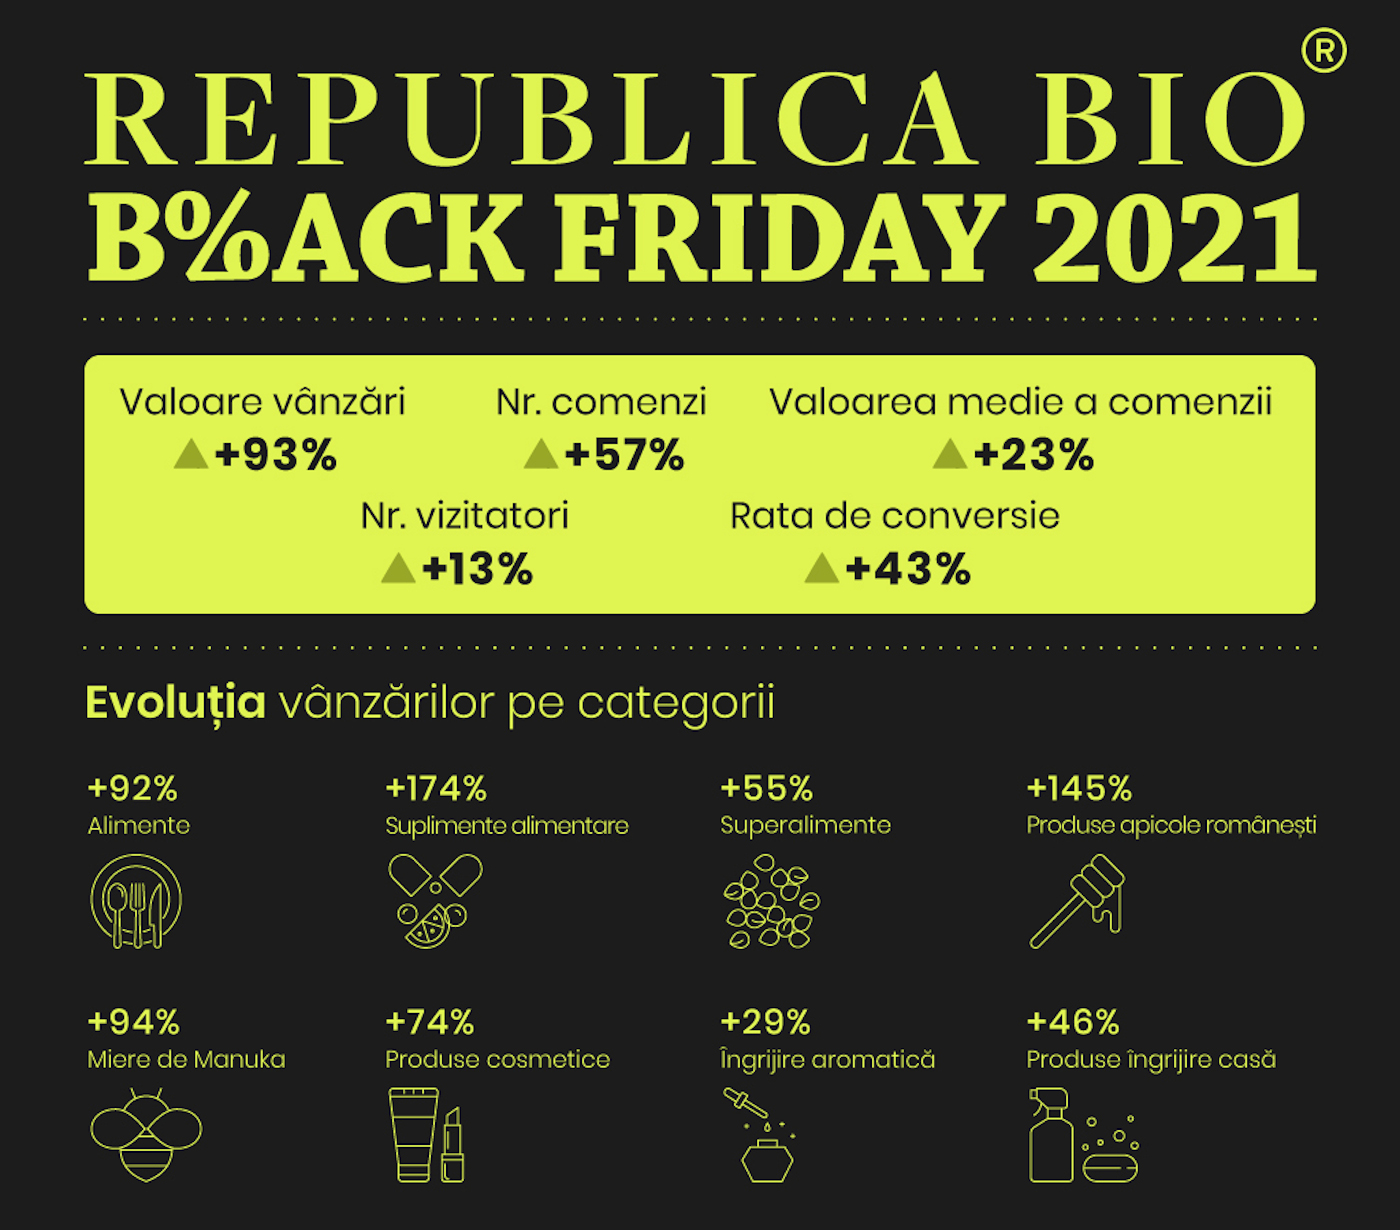 BlackFriday la Republica BIO in cifre 2021